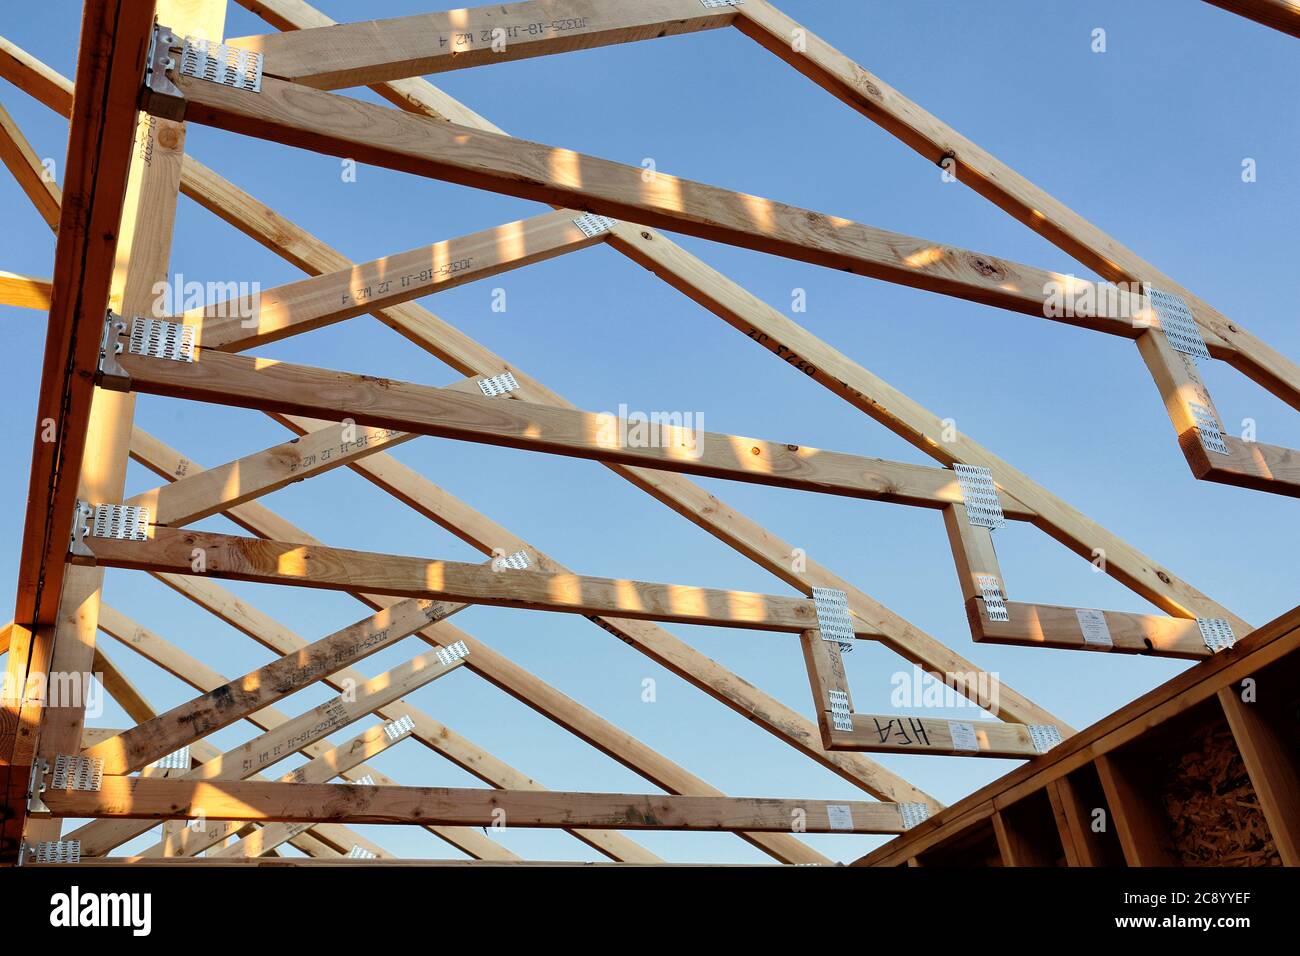 Une vue ouverte sur les fermes de toit en bois sur une maison en construction. Banque D'Images